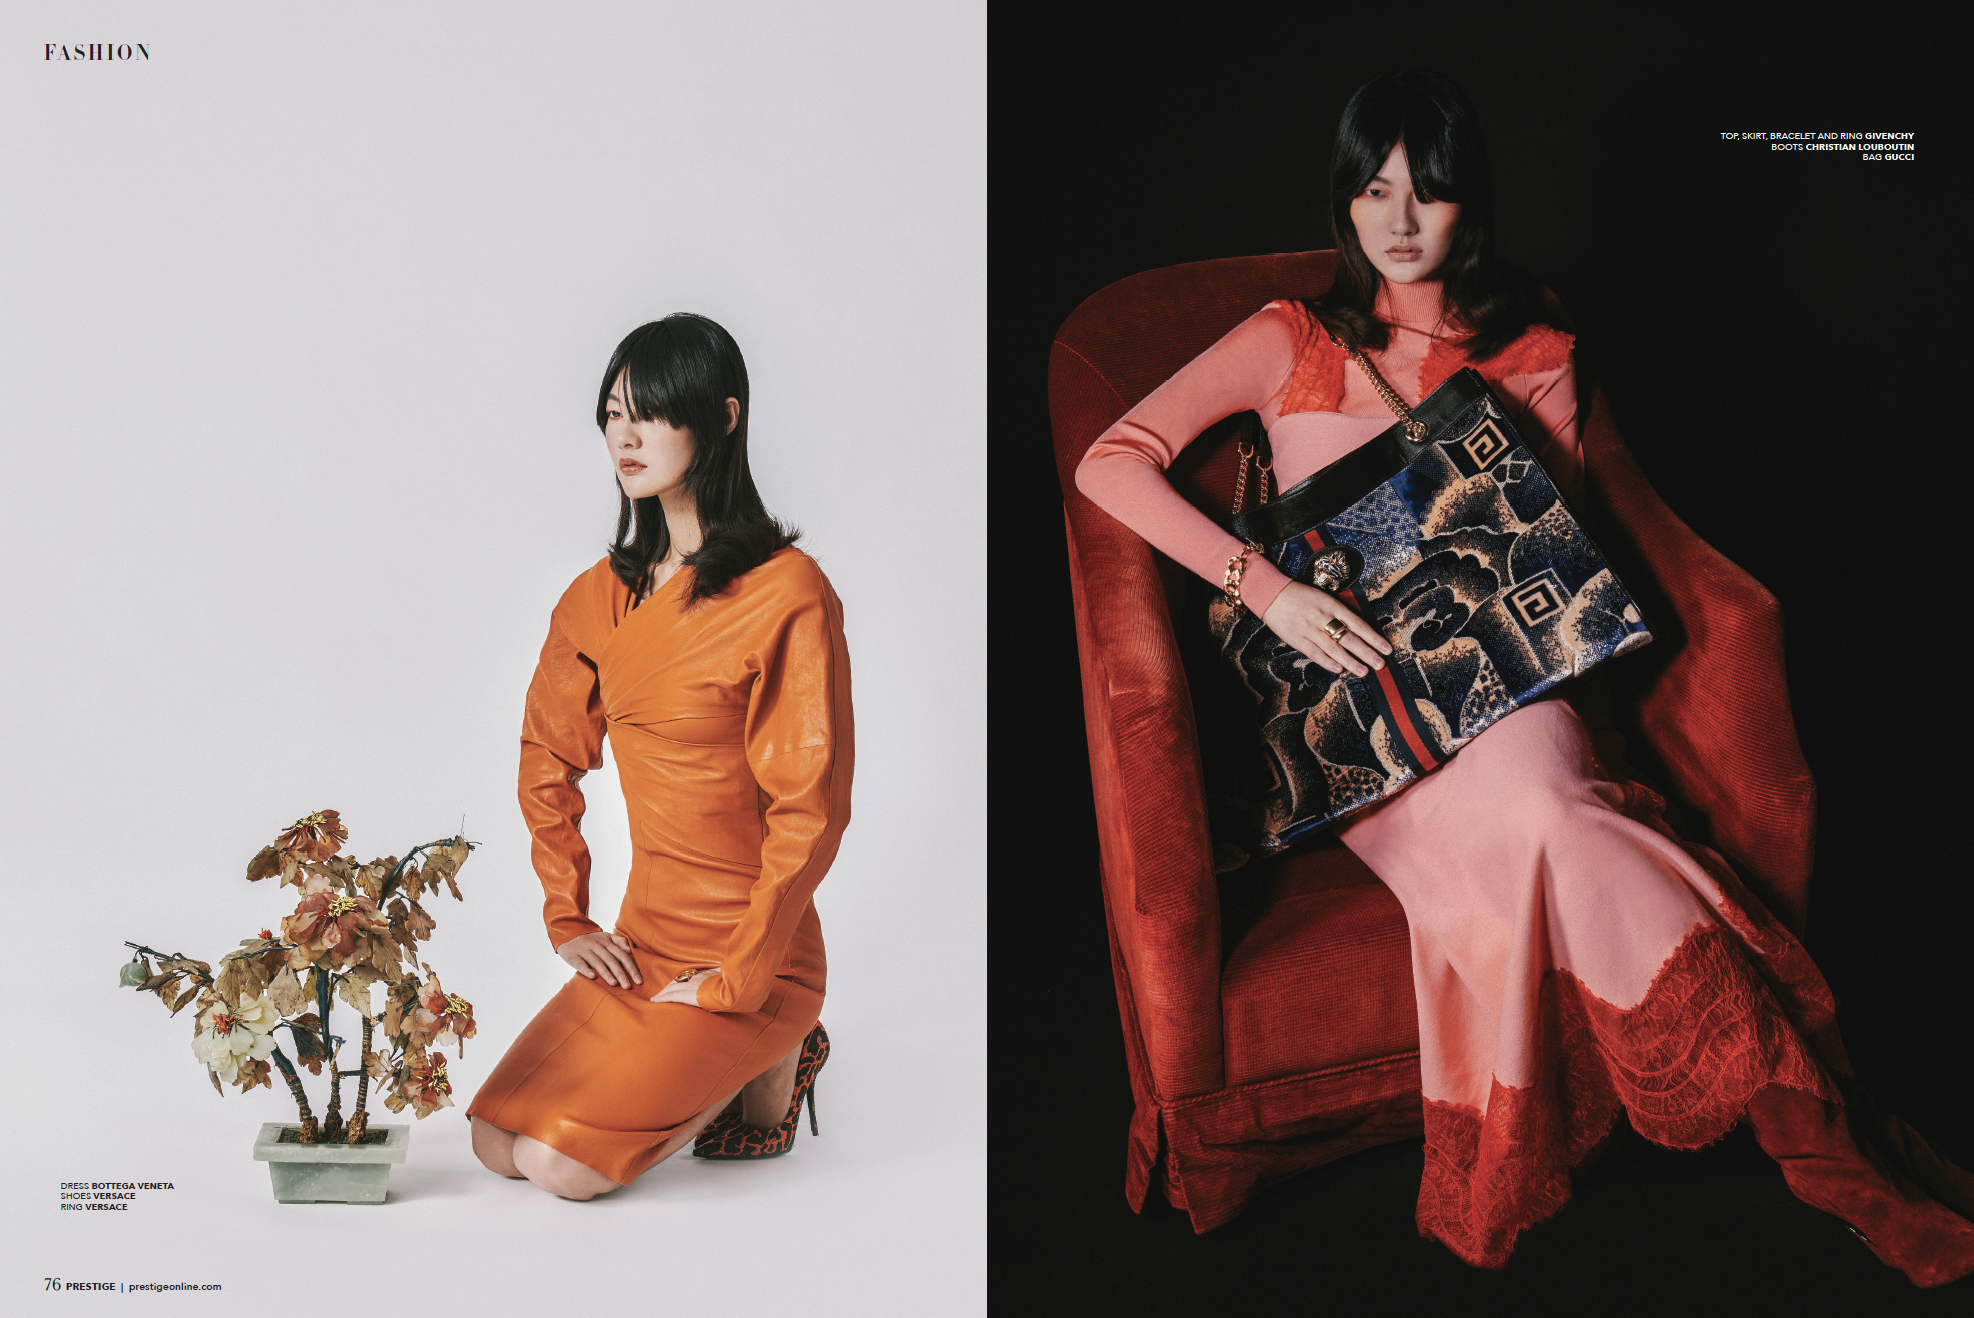 Chinese New Year Fashion Editorial Prestige Hong Kong Leung Mo January 2020 4.png